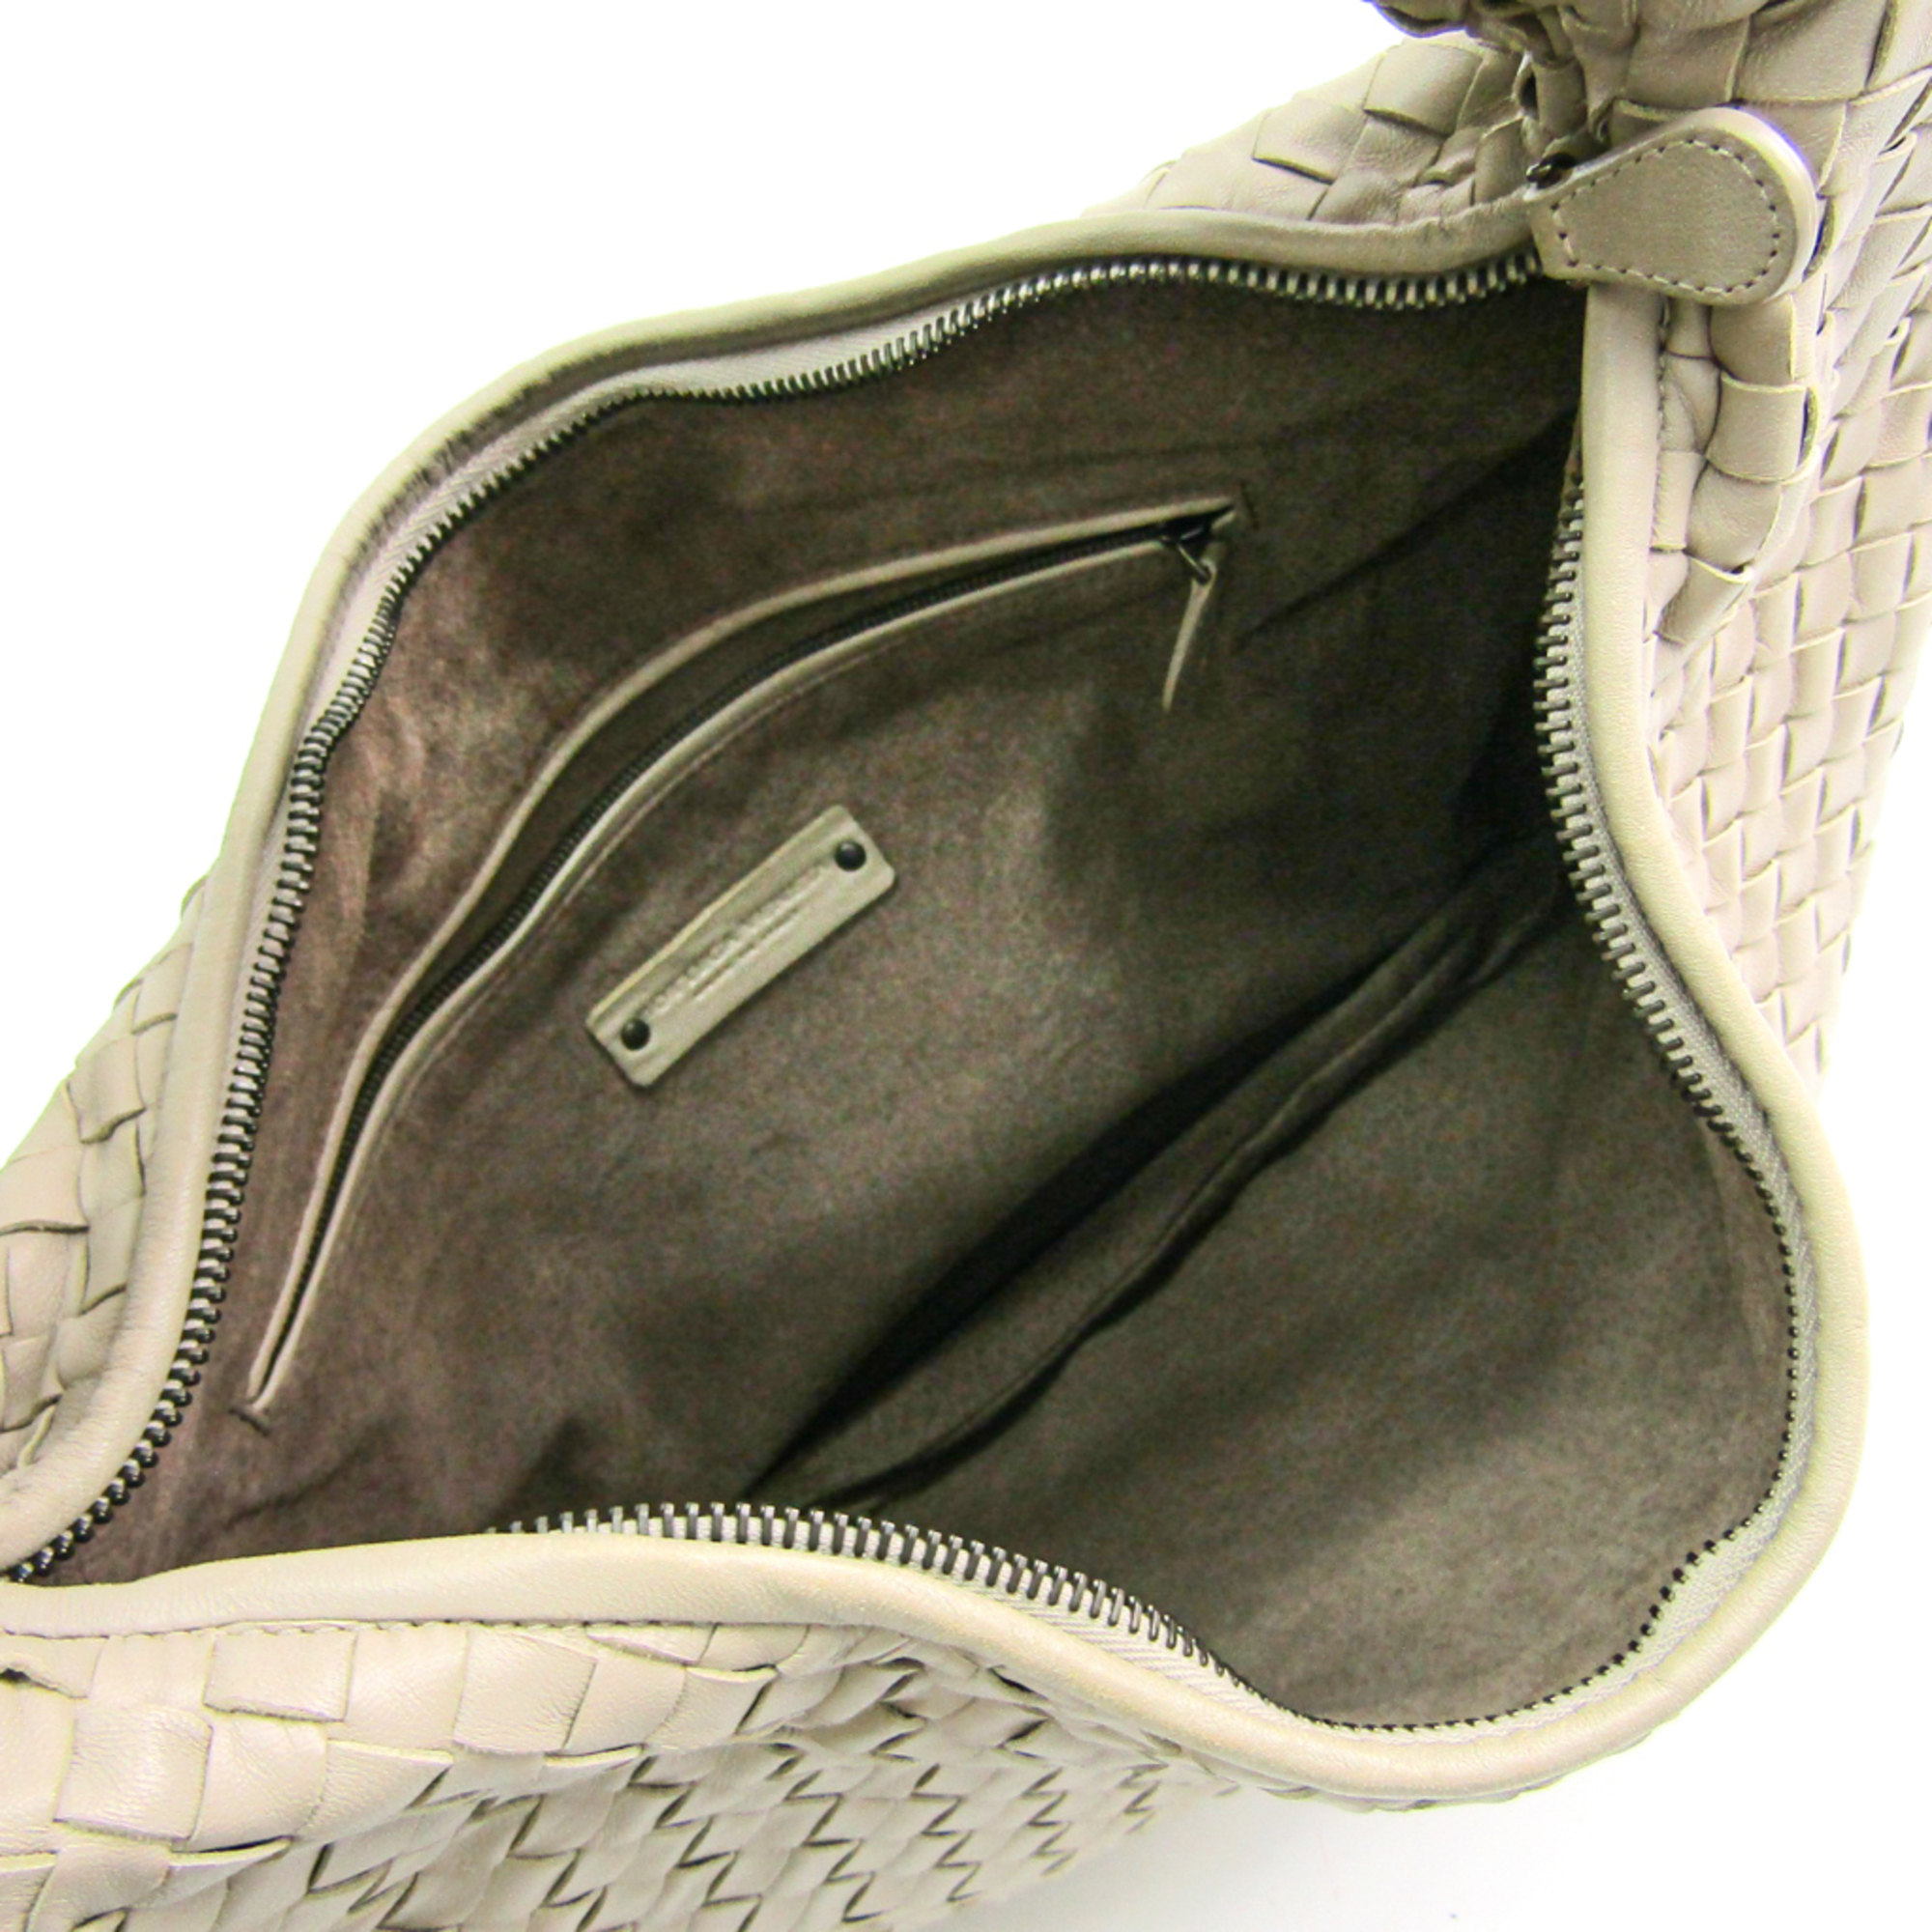 Bottega Veneta Intrecciato Intrecciato Handbag Gray Beige